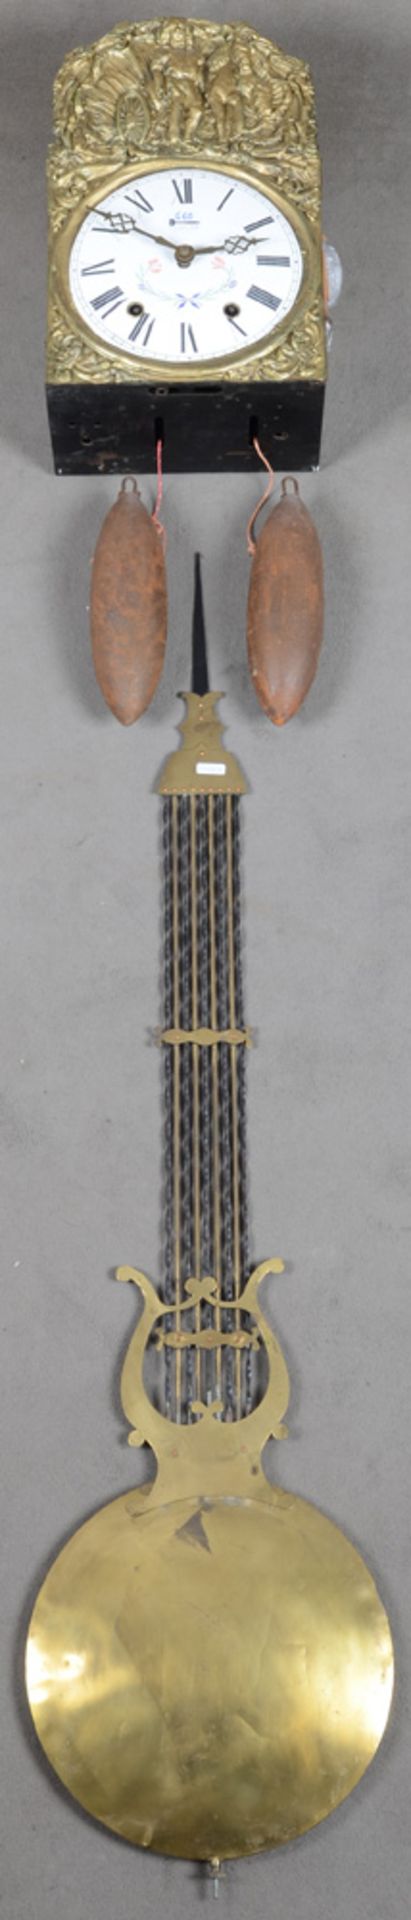 Comtoise-Uhr. Frankreich 19. Jh. Eisengehäuse, mit geprägter Messing-Gehäuseumrahmung, -pendel und G